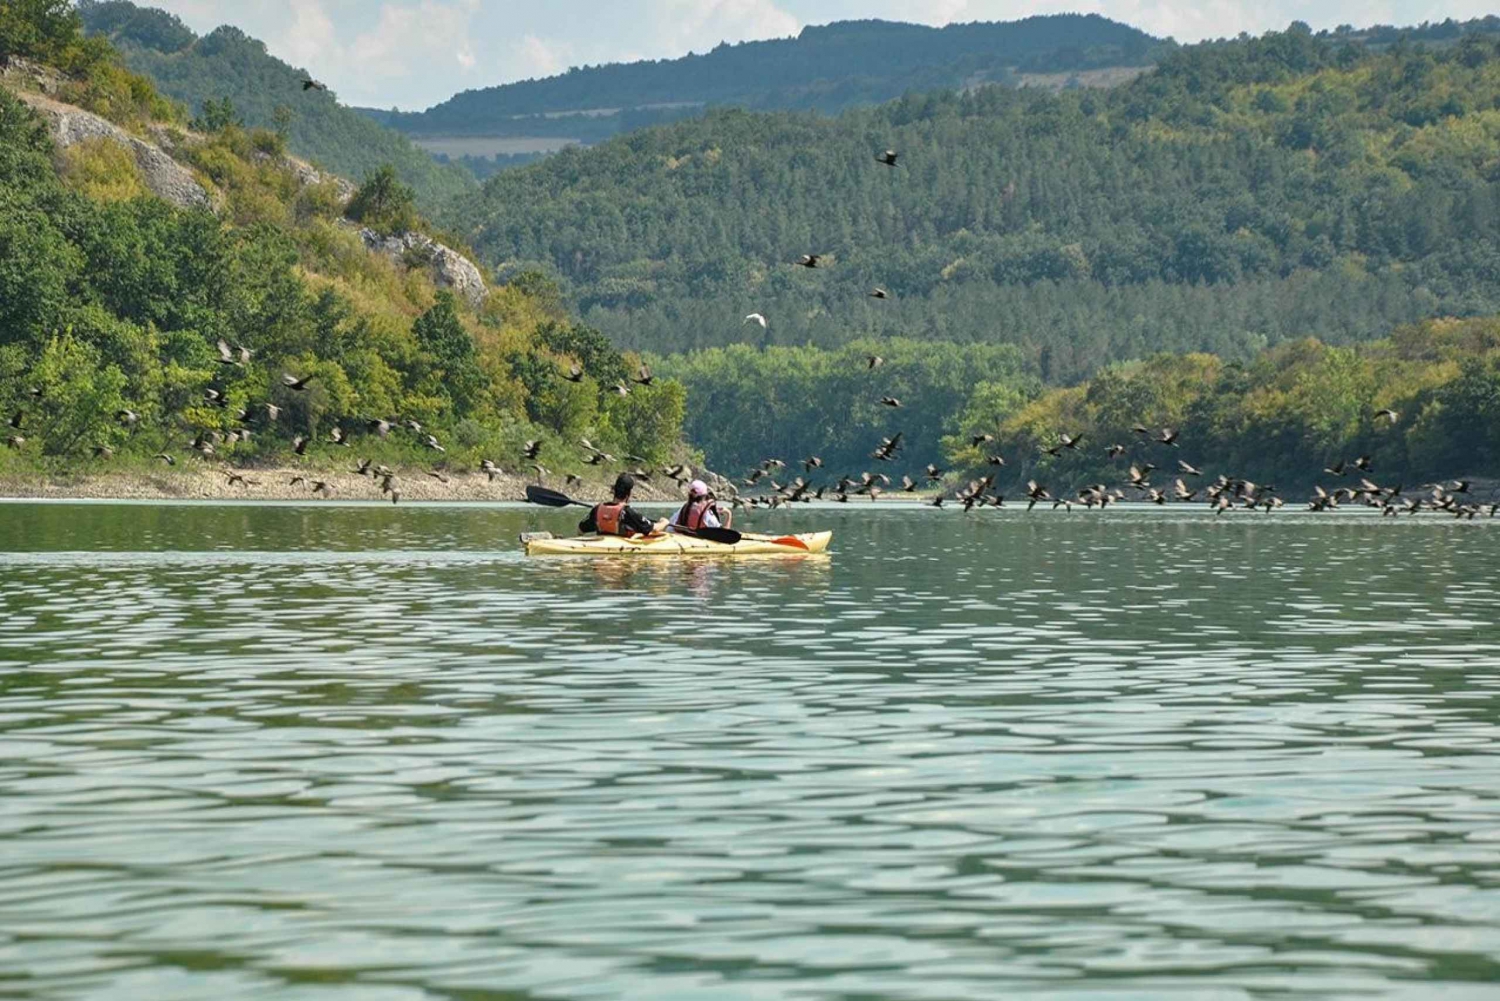 Stamboliski dam lake kayaking day tour